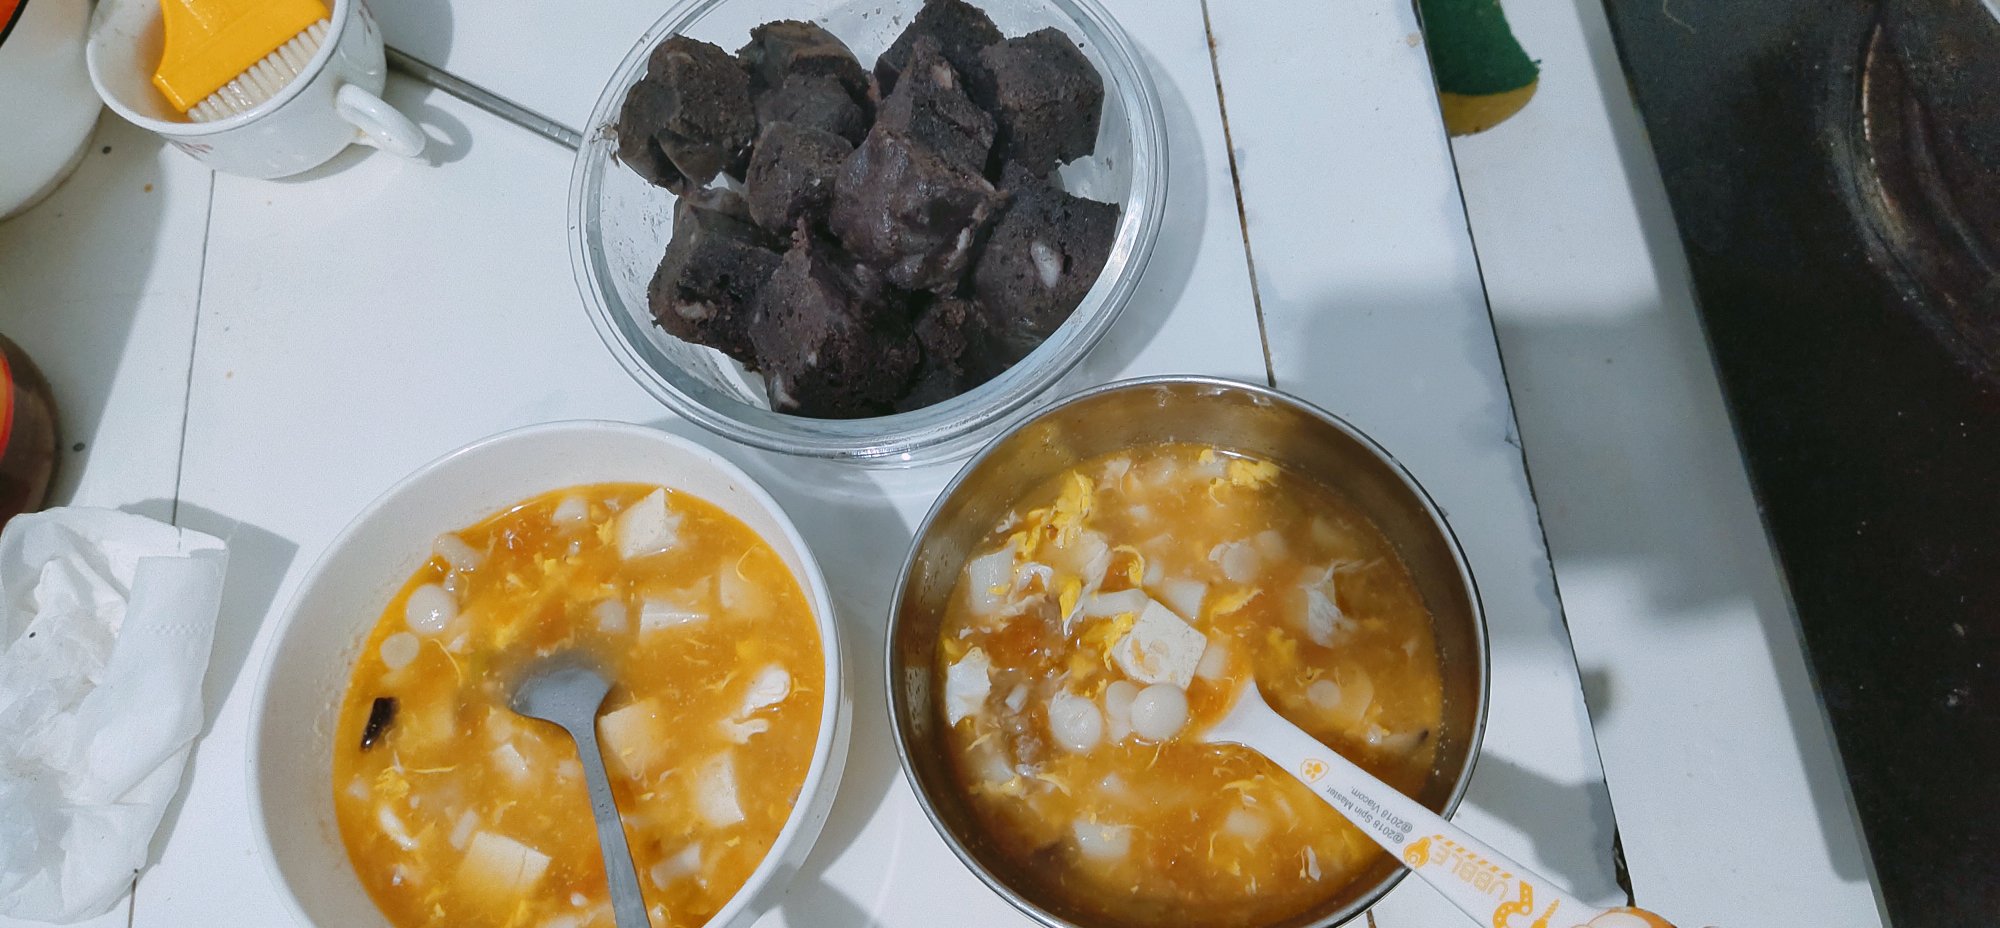 海鲜菇豆腐汤，超简单，晚上喝一碗暖暖的🍲